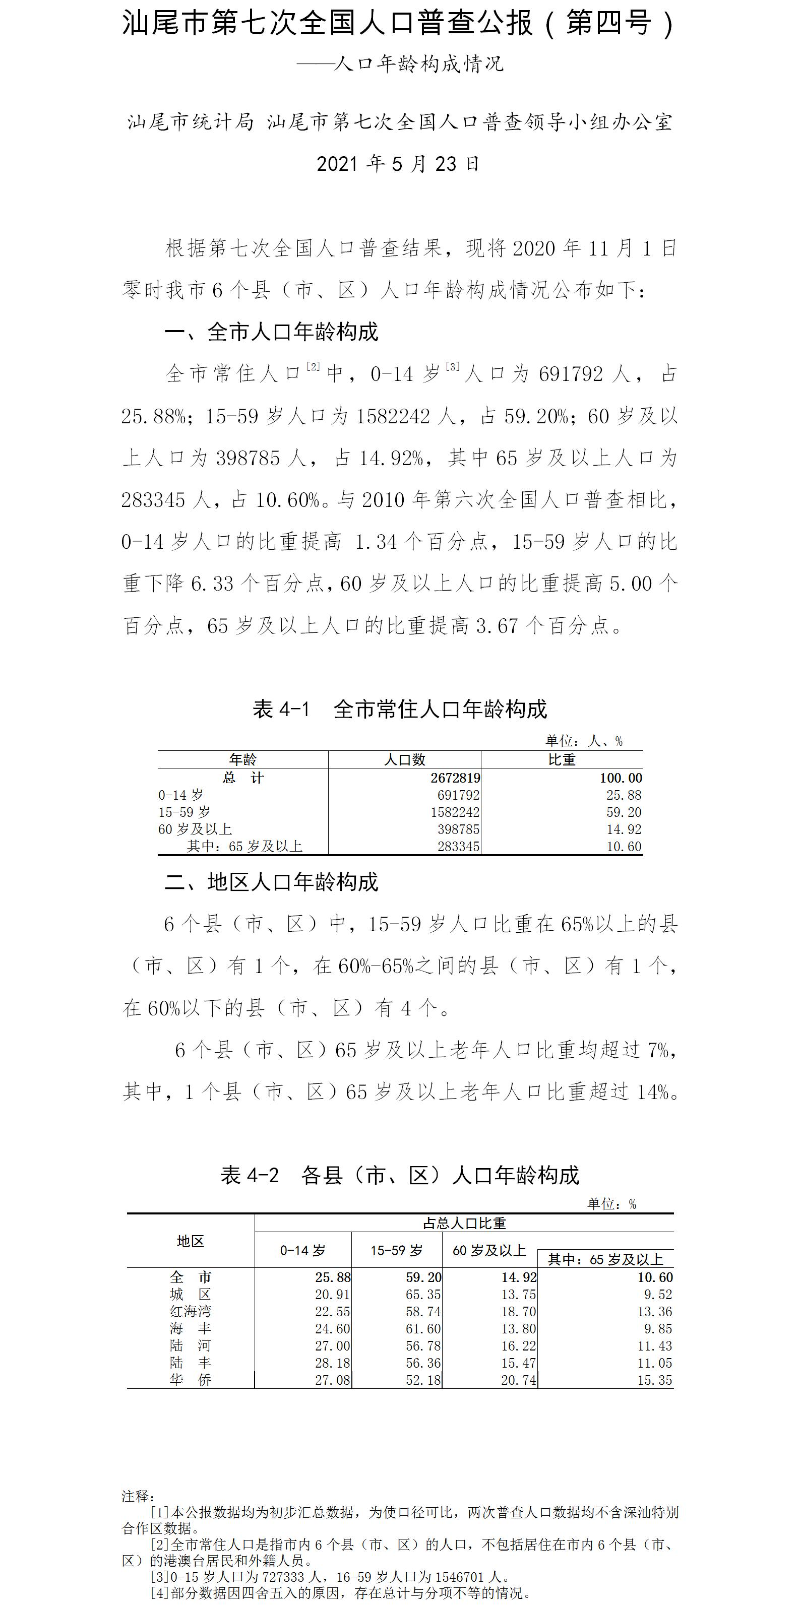 附件4：汕尾市第七次全国人口普查公报（第四号）.jpg